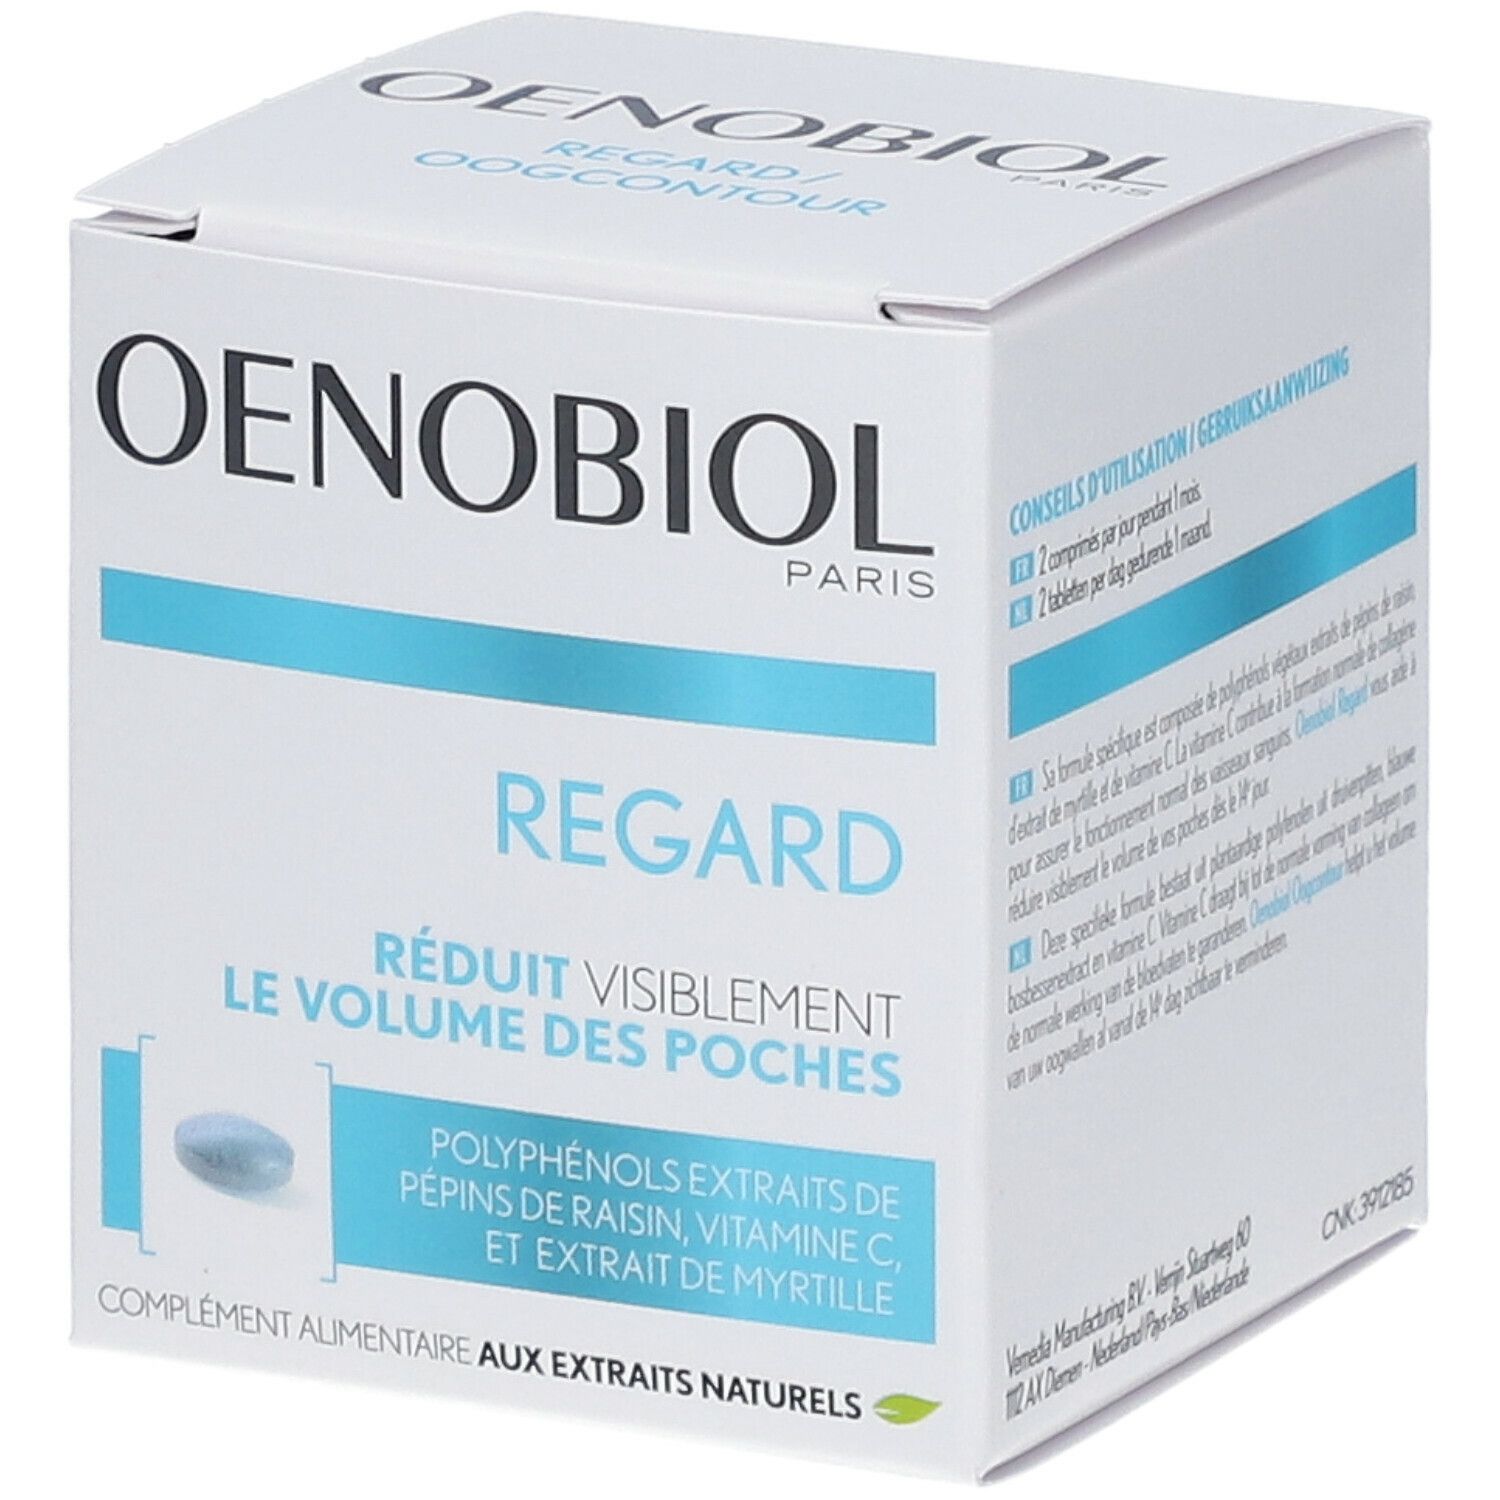 Image of OENOBIOL REGARD